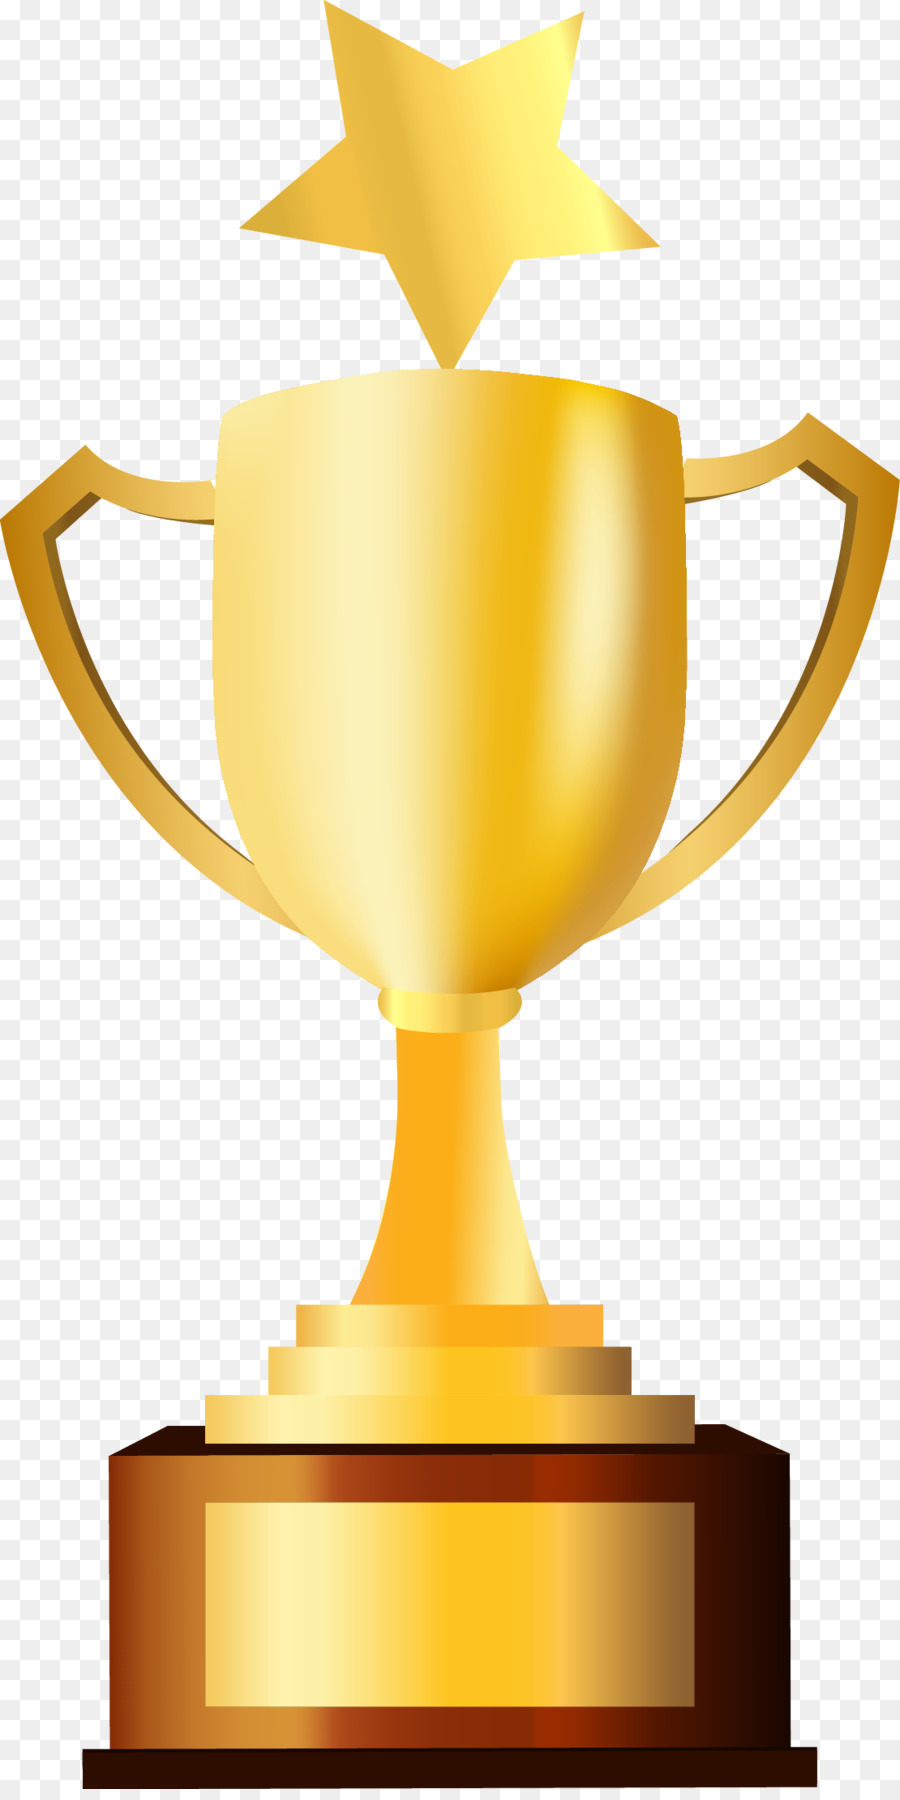 Trophy Prize Clip art - Golden five pointed star trophy png download - 1110*2207 - Free Transparent Trophy png Download.